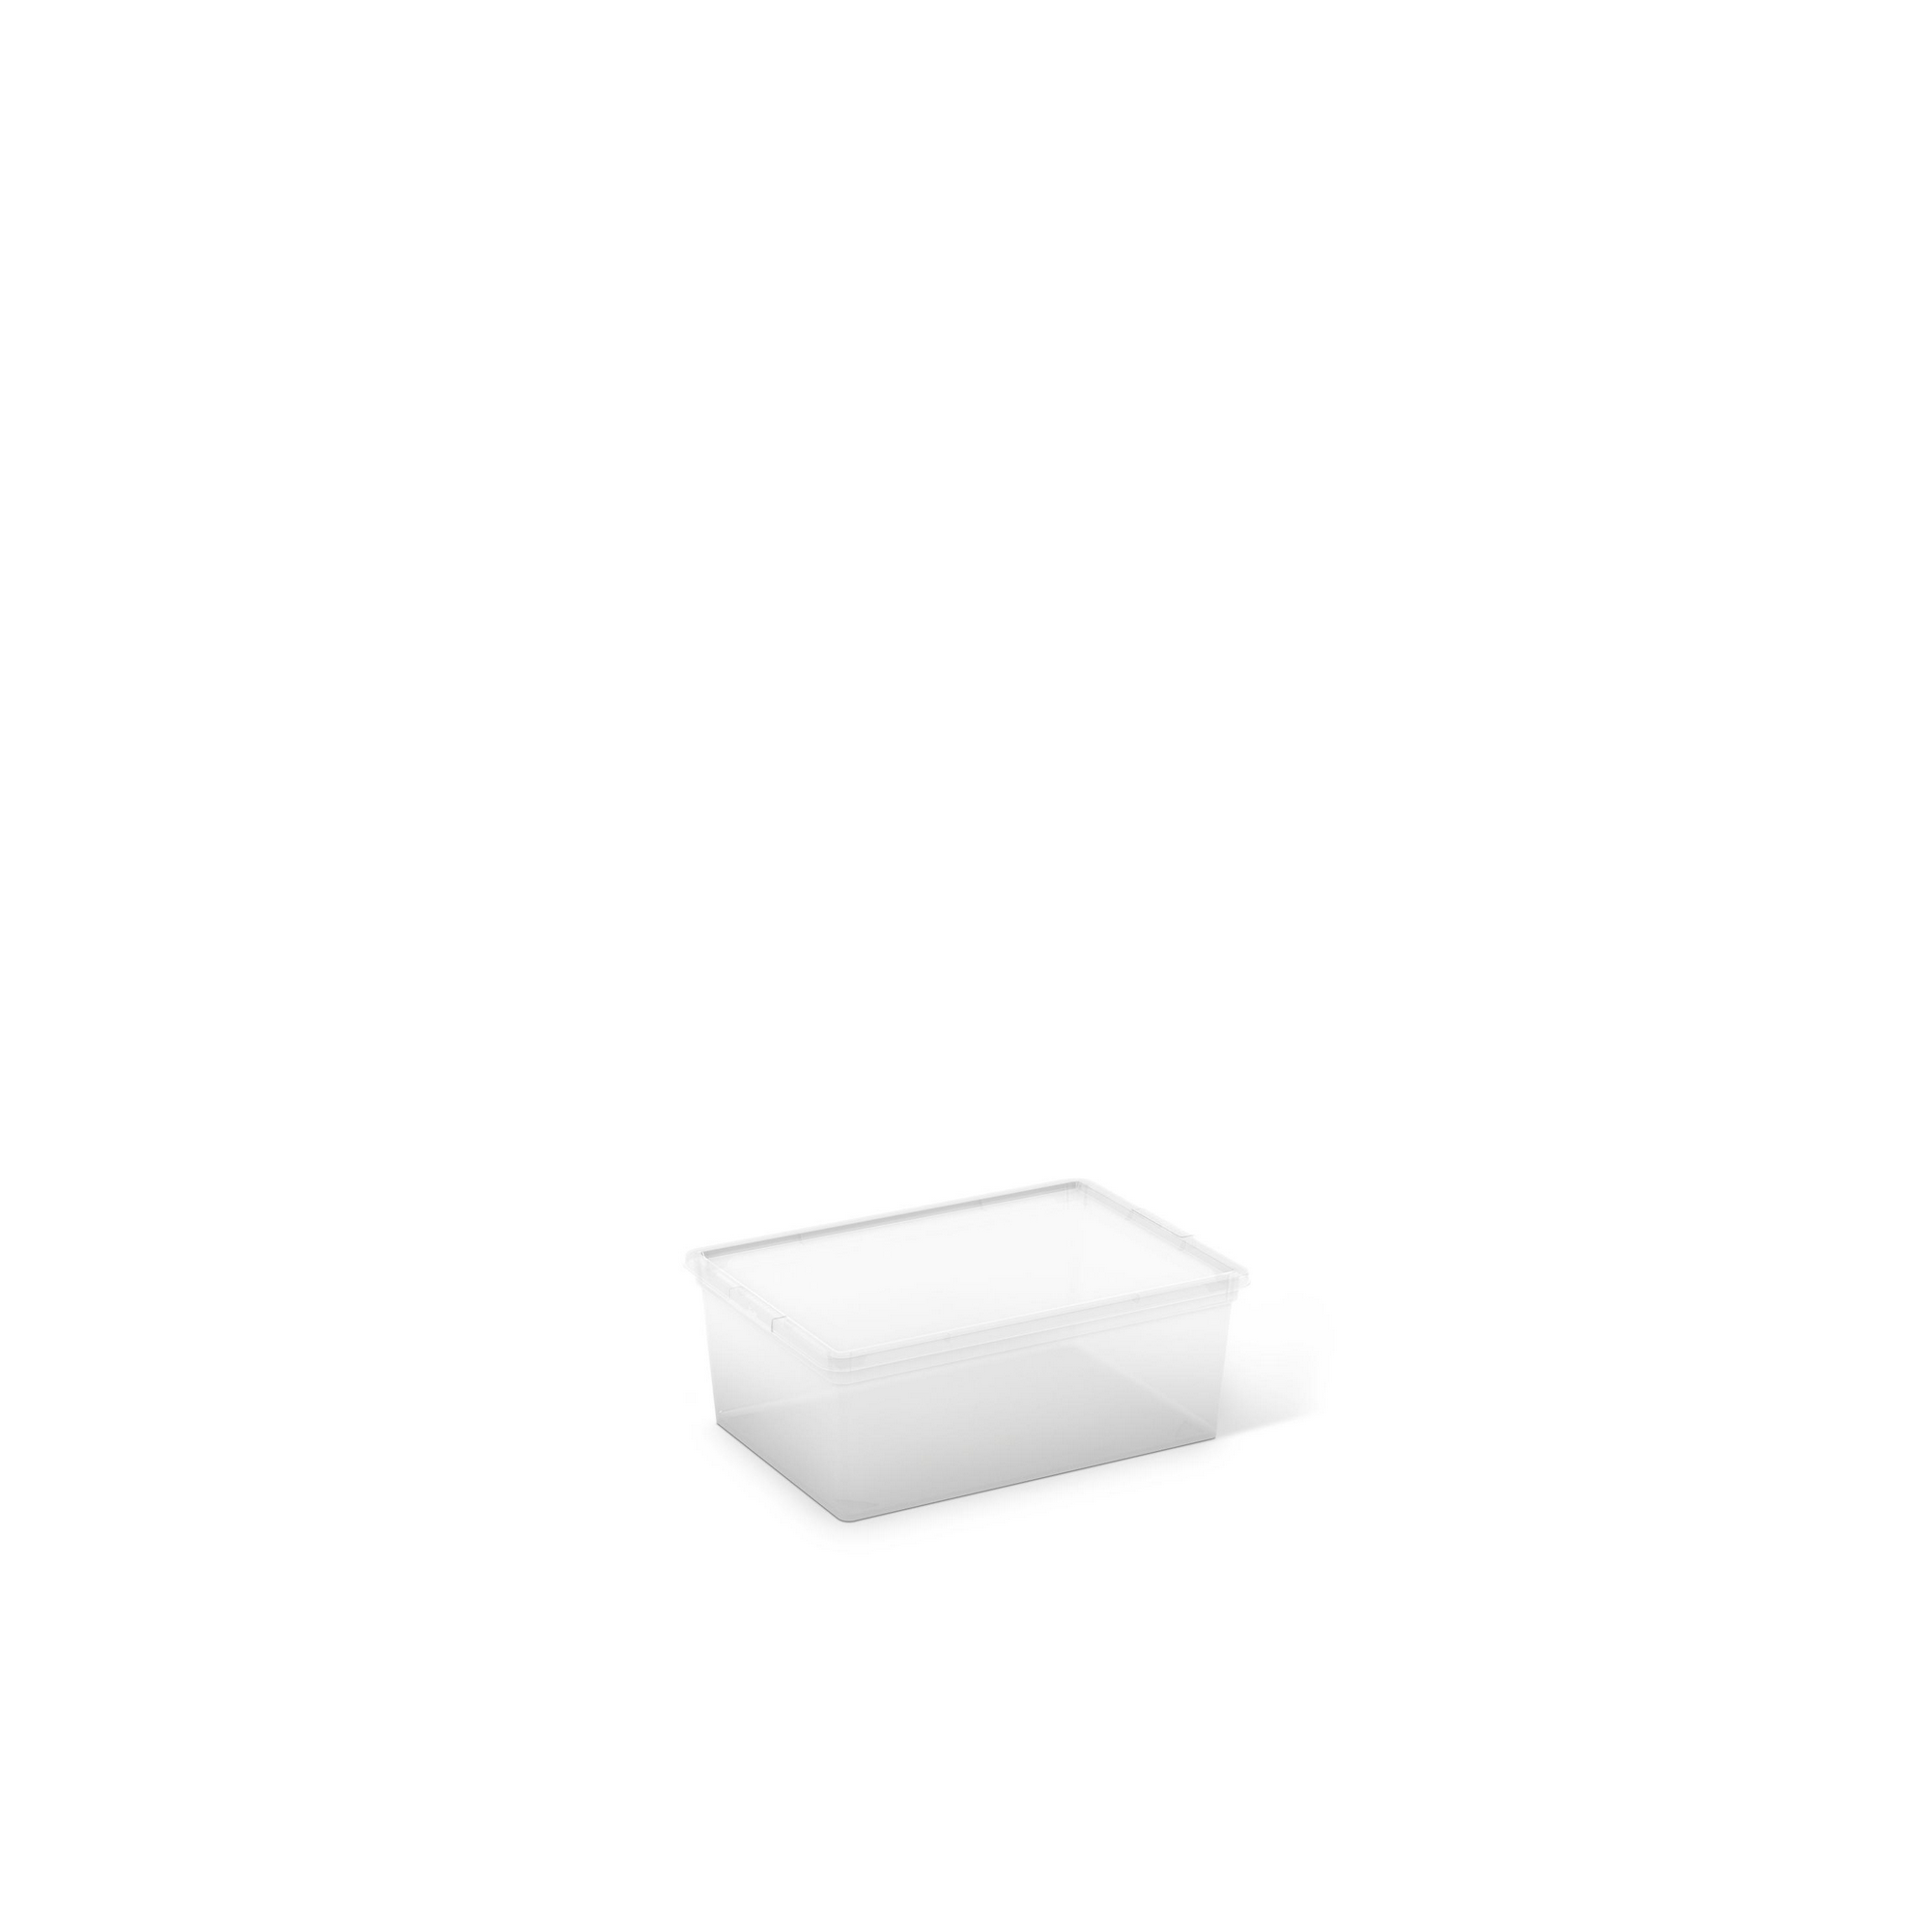 Aufbewahrungsbox 'C-Box' Größe S 37 x 26 x 14 cm + product picture